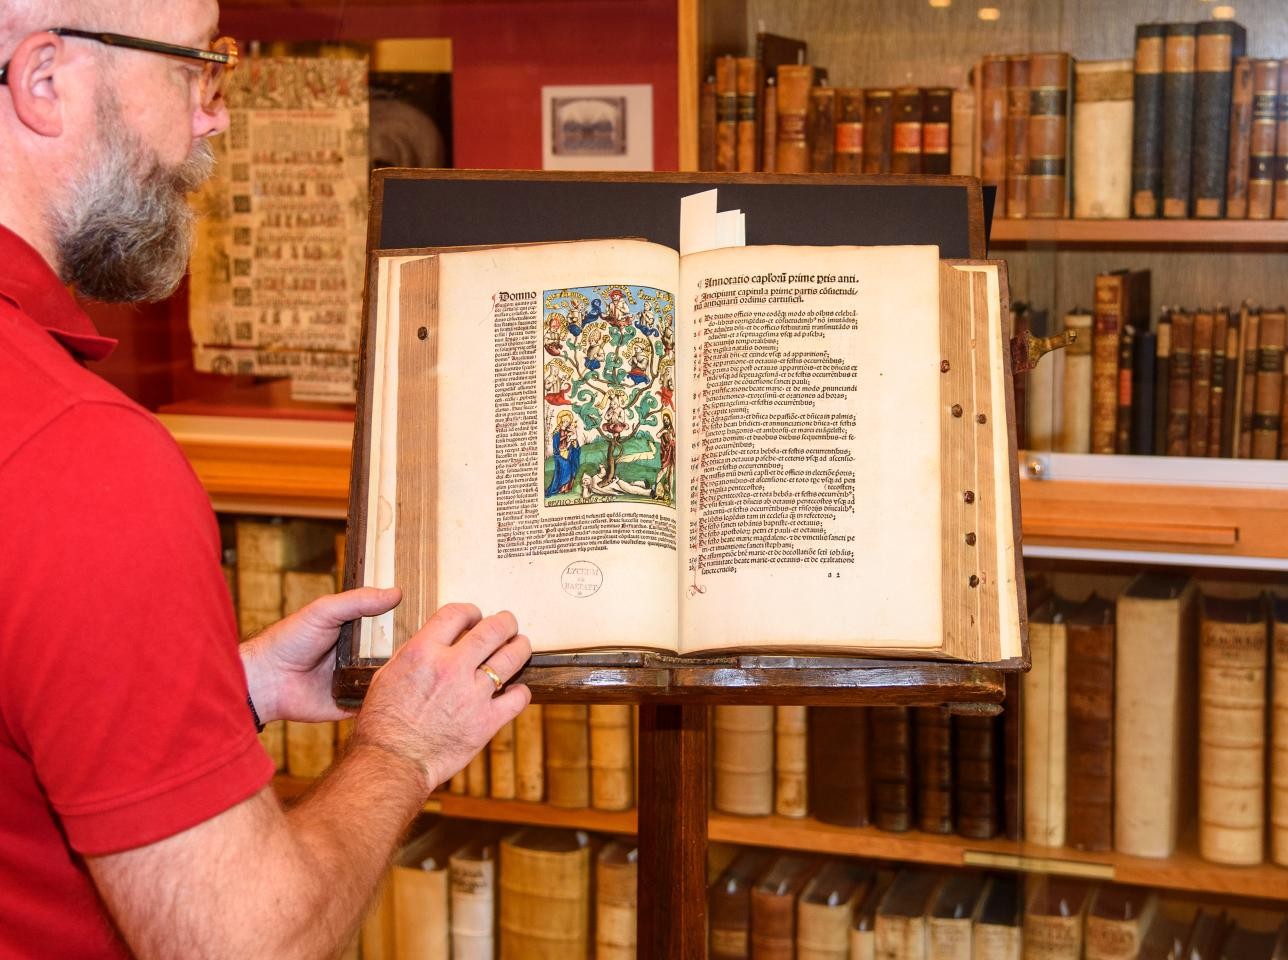 Mann zeigt mittelalterliches Buch.